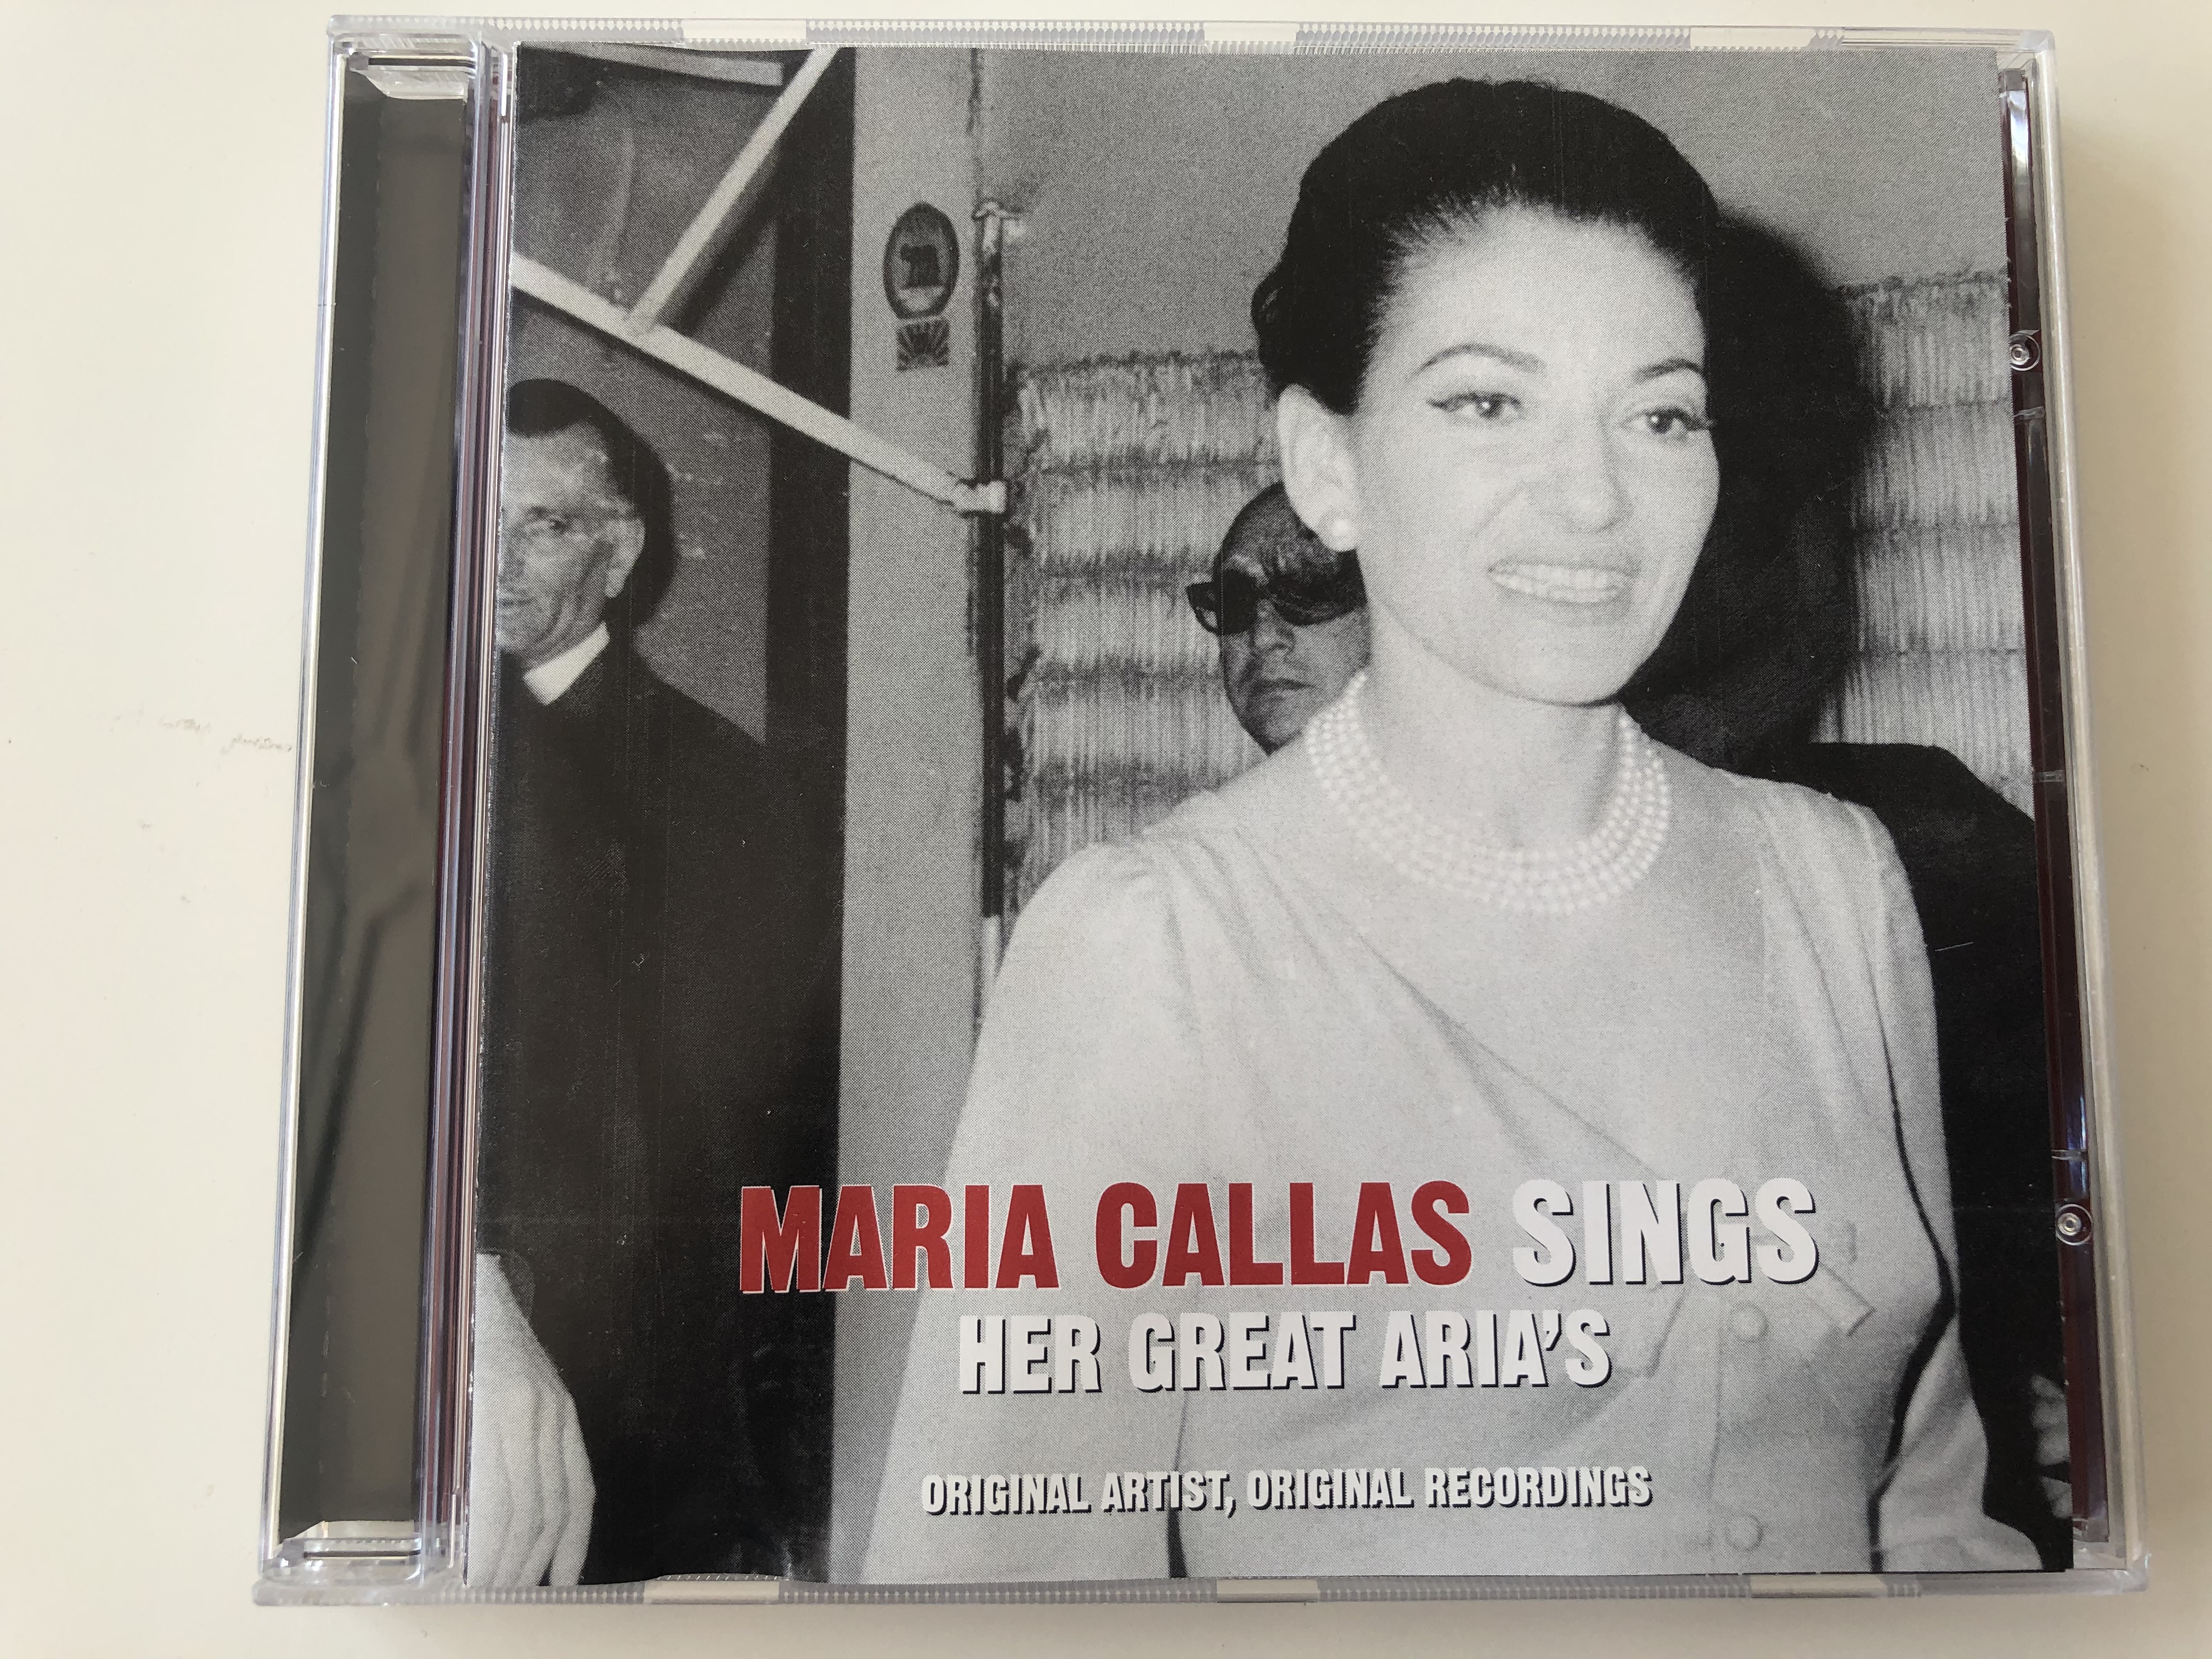 maria-callas-sings-her-great-aria-s-original-artist-original-recordings-disky-audio-cd-2006-si-903629-1-.jpg